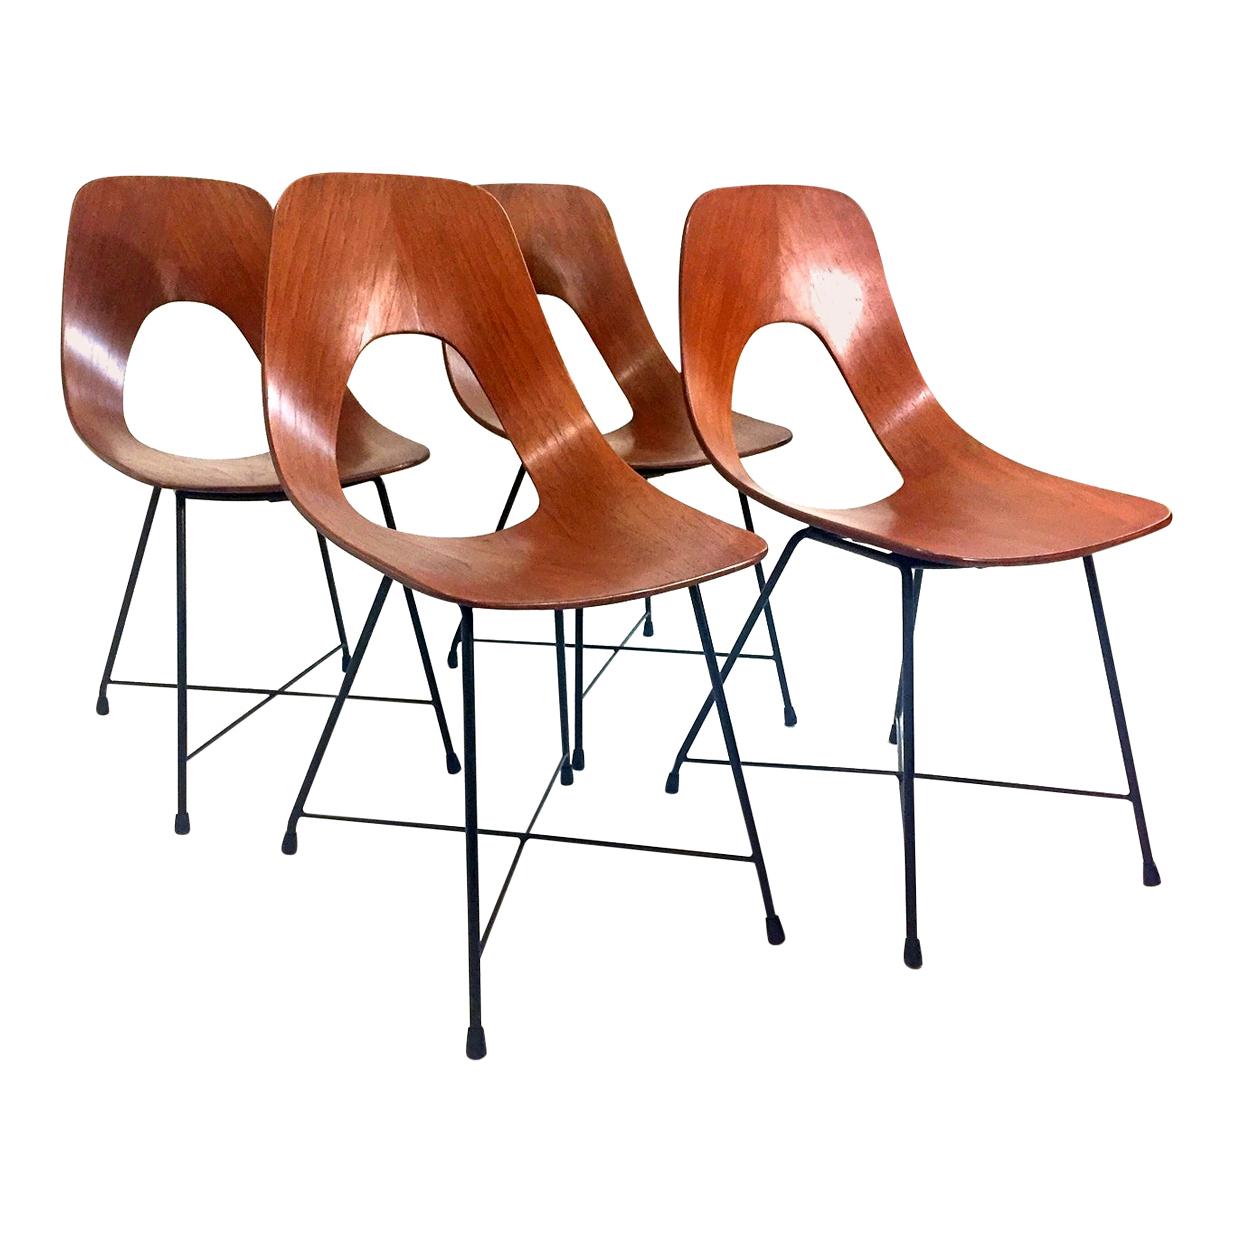 Set of Four Mid-Century Modern Augusto Bozzi "Ariston" Chairs for Saporiti 1950s